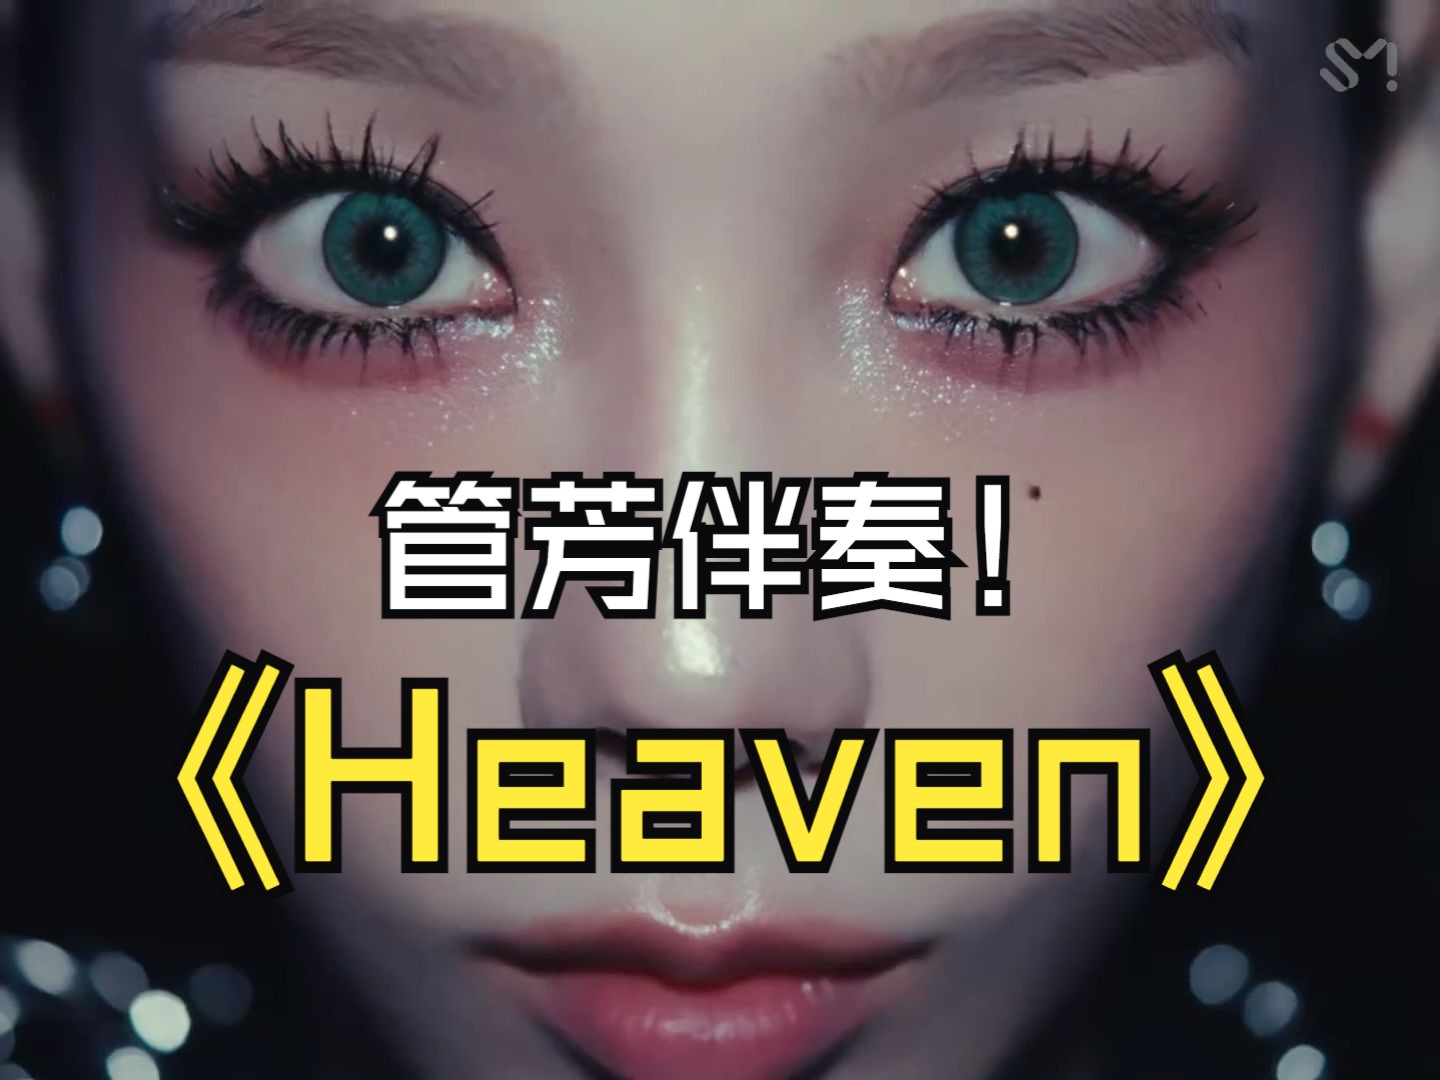 【金泰妍回归】最新单曲伴奏《Heaven》MV公开!泰妍最新单曲《Heaven》MV公开!